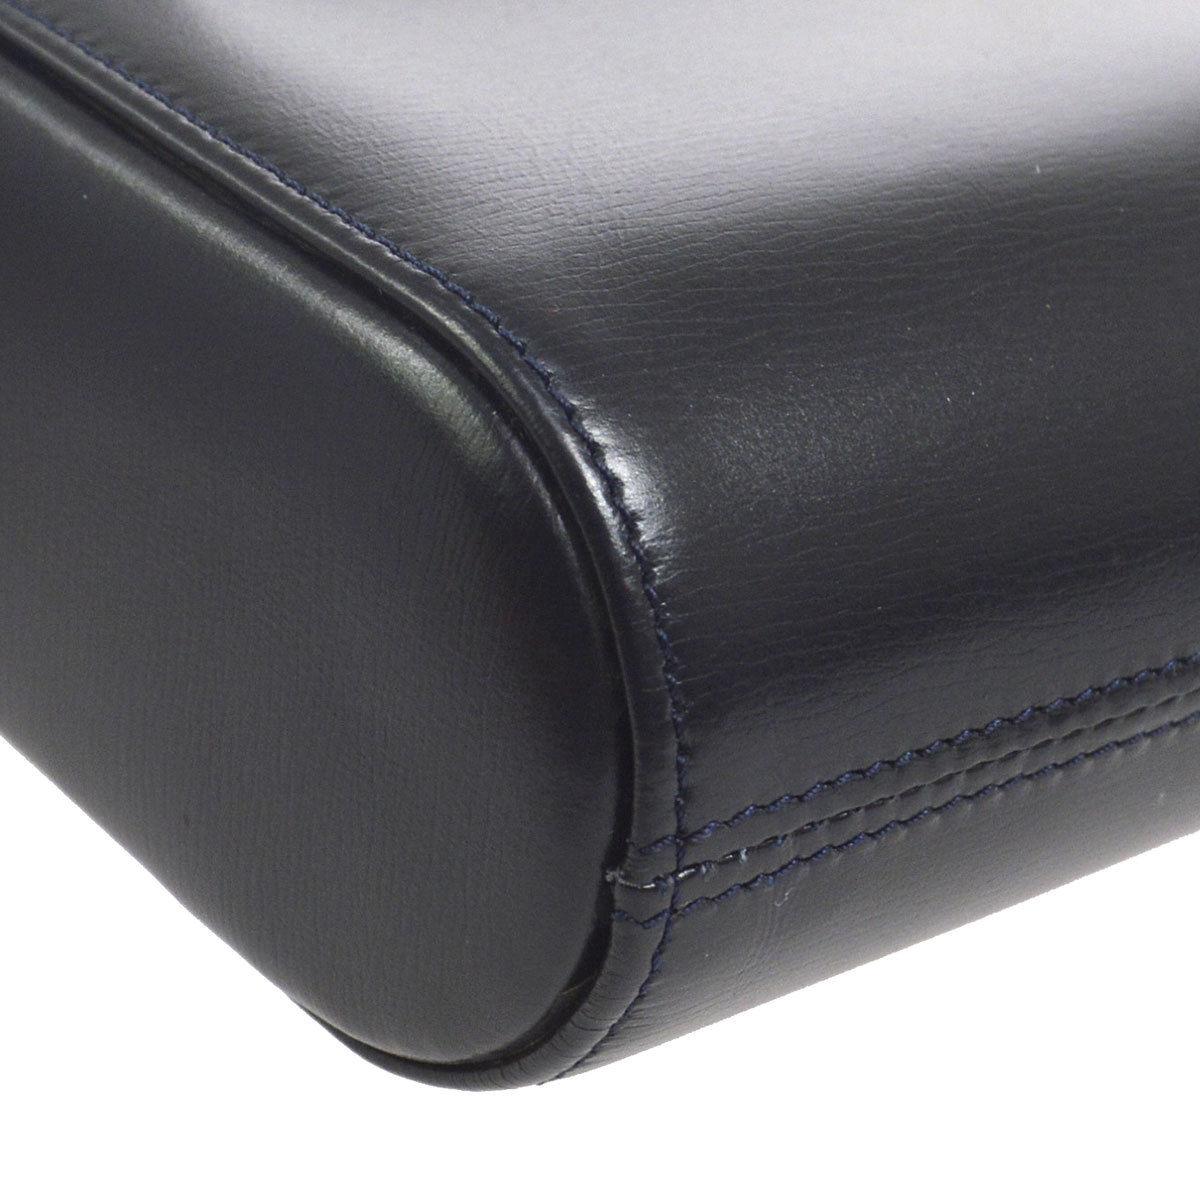 Women's Cartier Dark Midnight Blue Leather Gold Emblem Envelope Evening Clutch Flap Bag